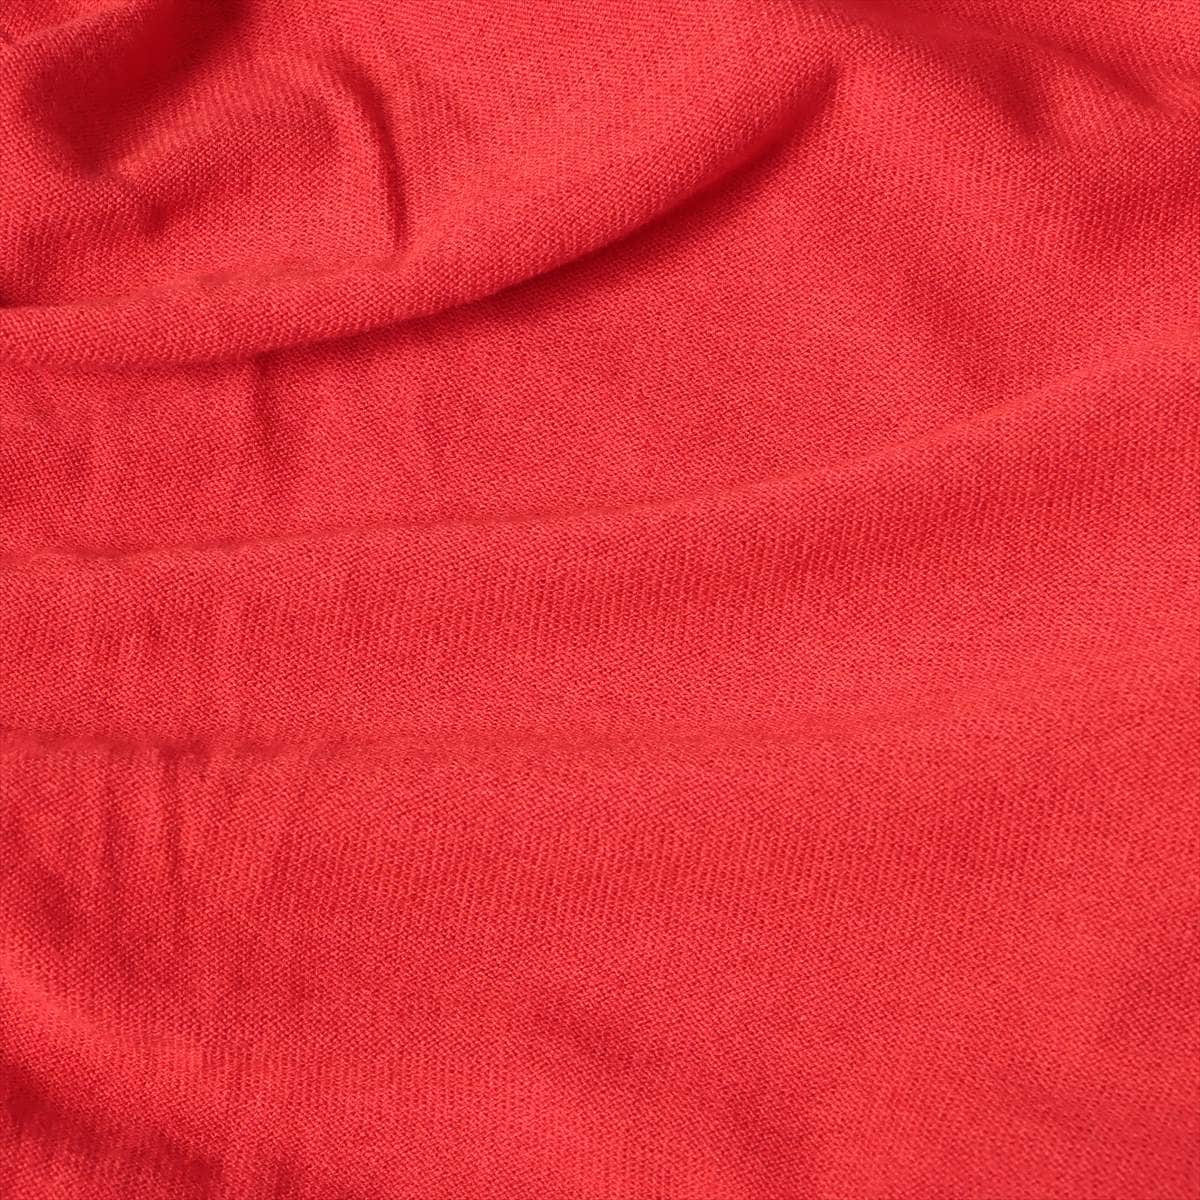 Maison Margiela Cotton & wool Knit L Men's Red  Elbow patch V-neck